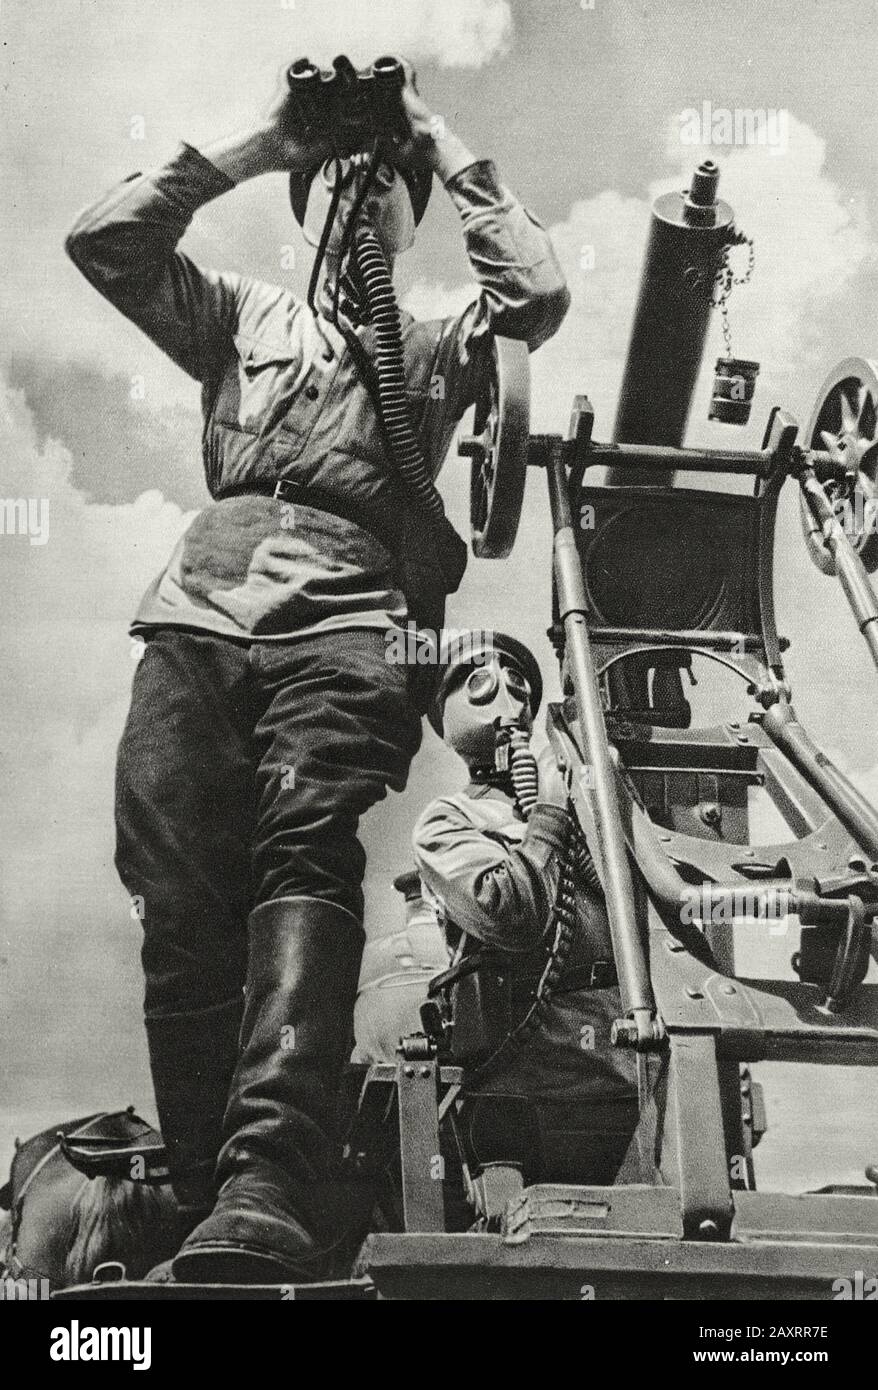 Ejército Rojo. Del libro de propaganda soviético de 1937. Ametralladoras del Ejército soviético Foto de stock